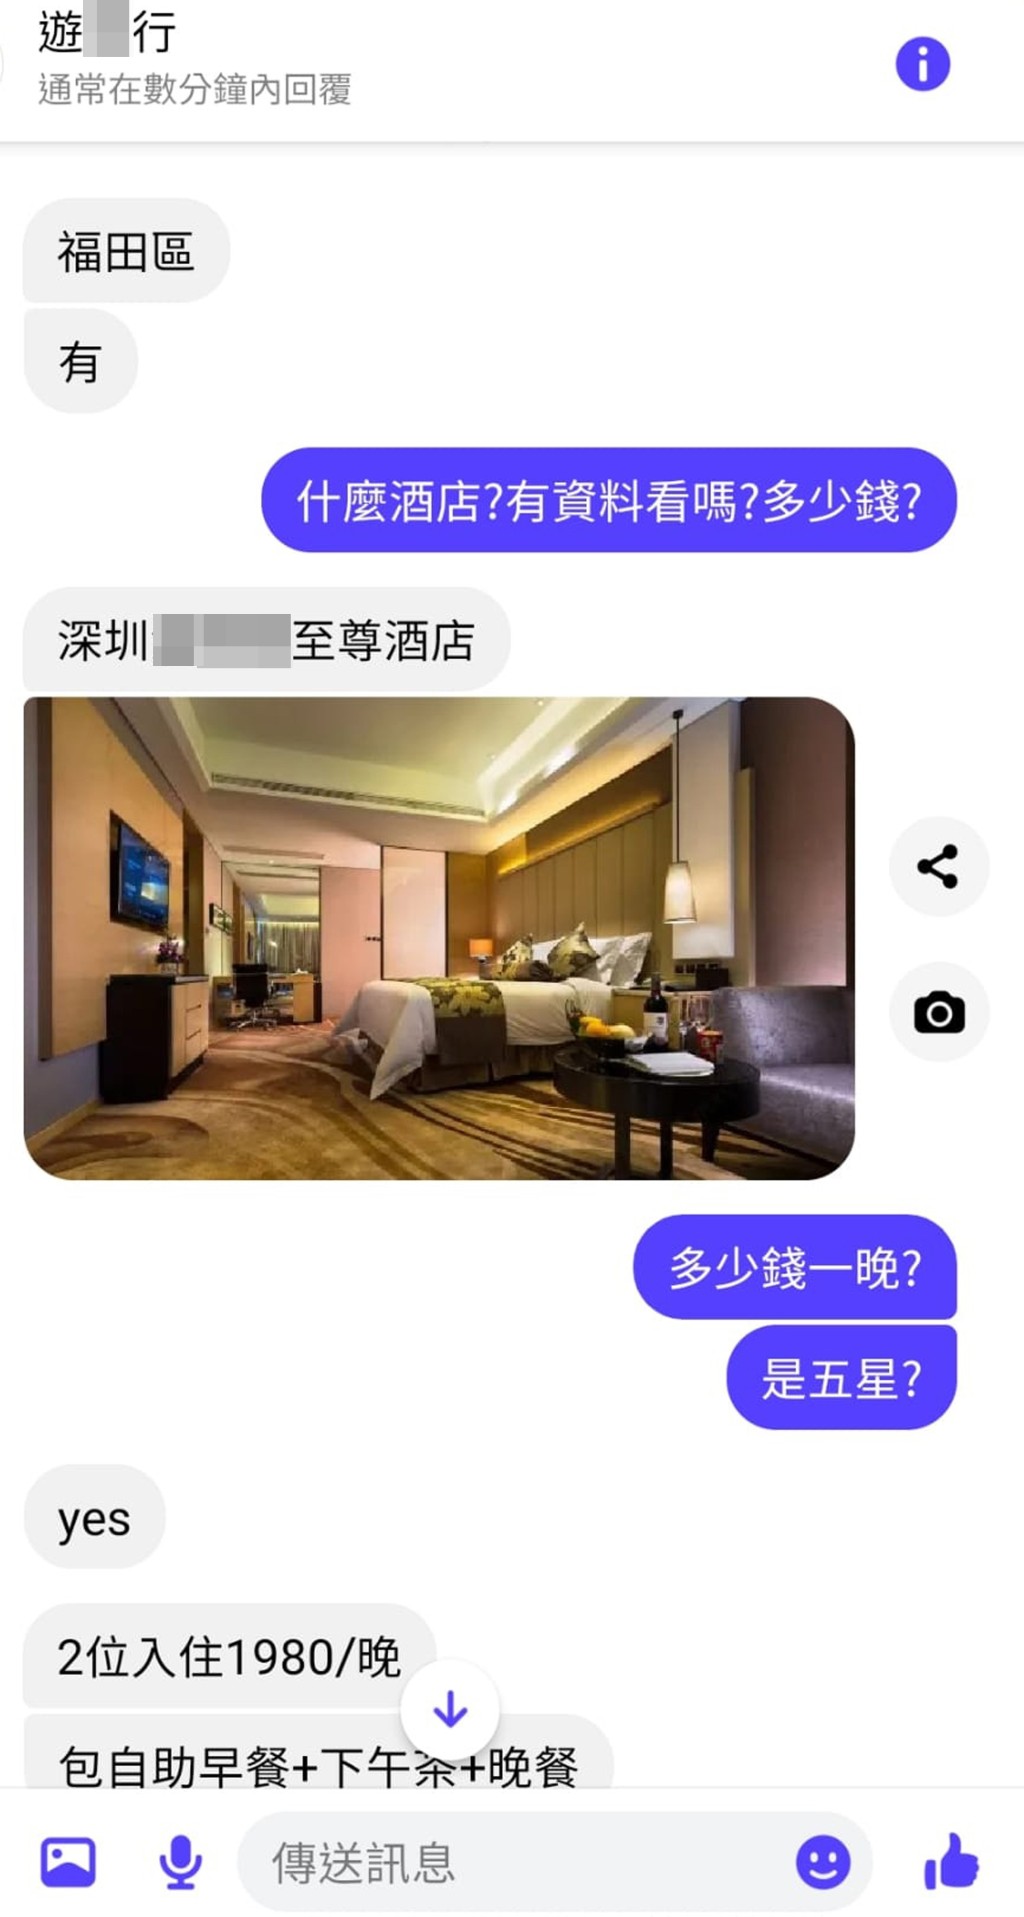 曾涉及代訂本港酒店房間騙案的「遊X行」，近日疑看準「通關」時機，大力推介代訂深圳酒店客房服務。